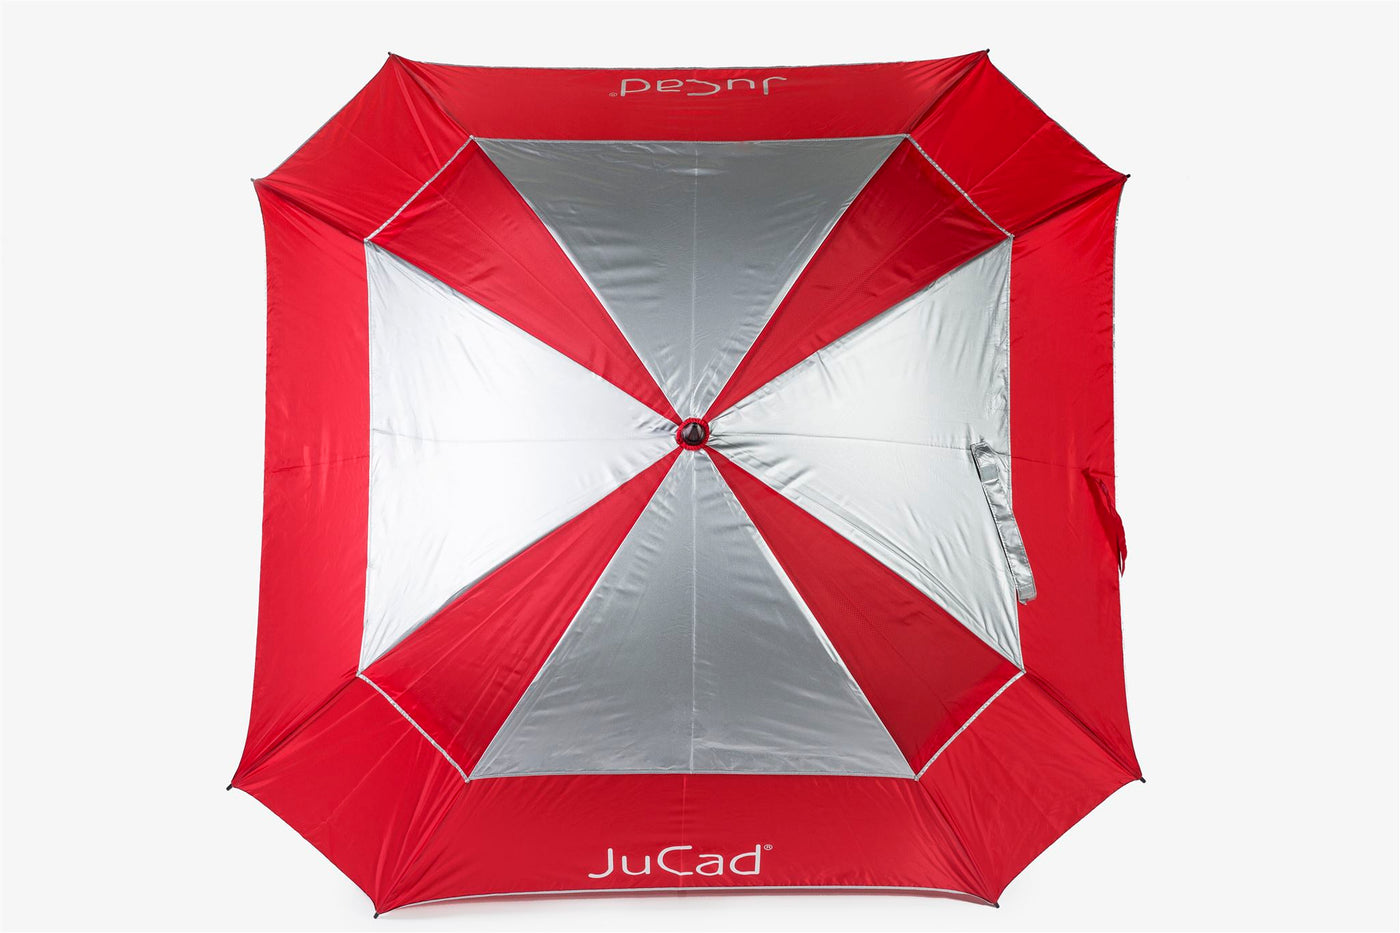 JuCad windproof golf umbrella with umbrella pin